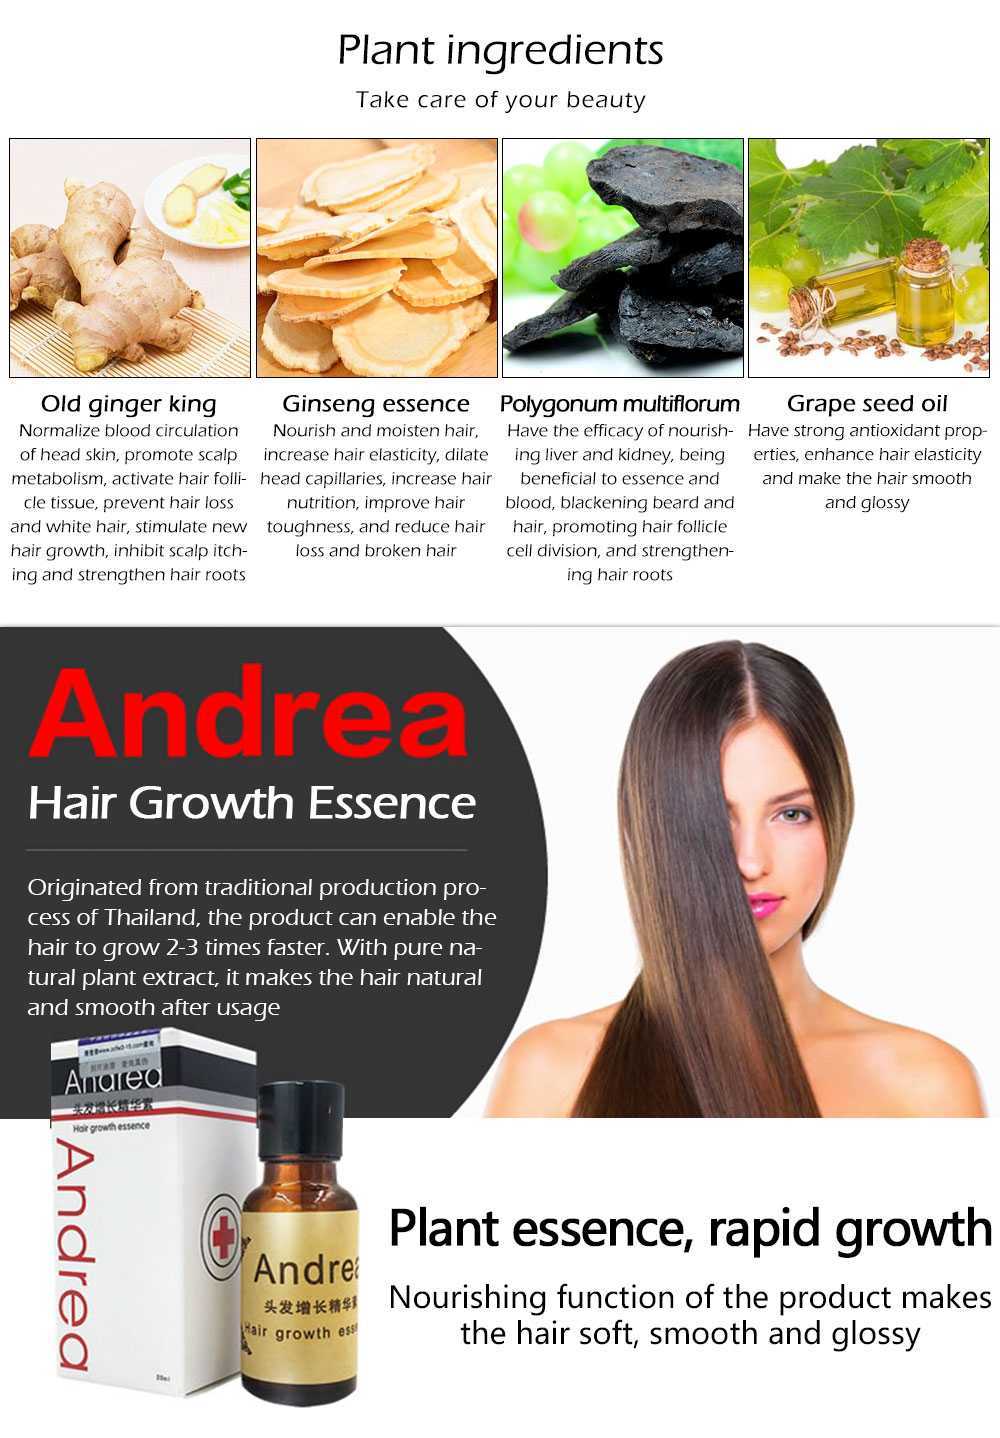 Андреа для роста волос: сыворотка, средство - отзывы и способ применения